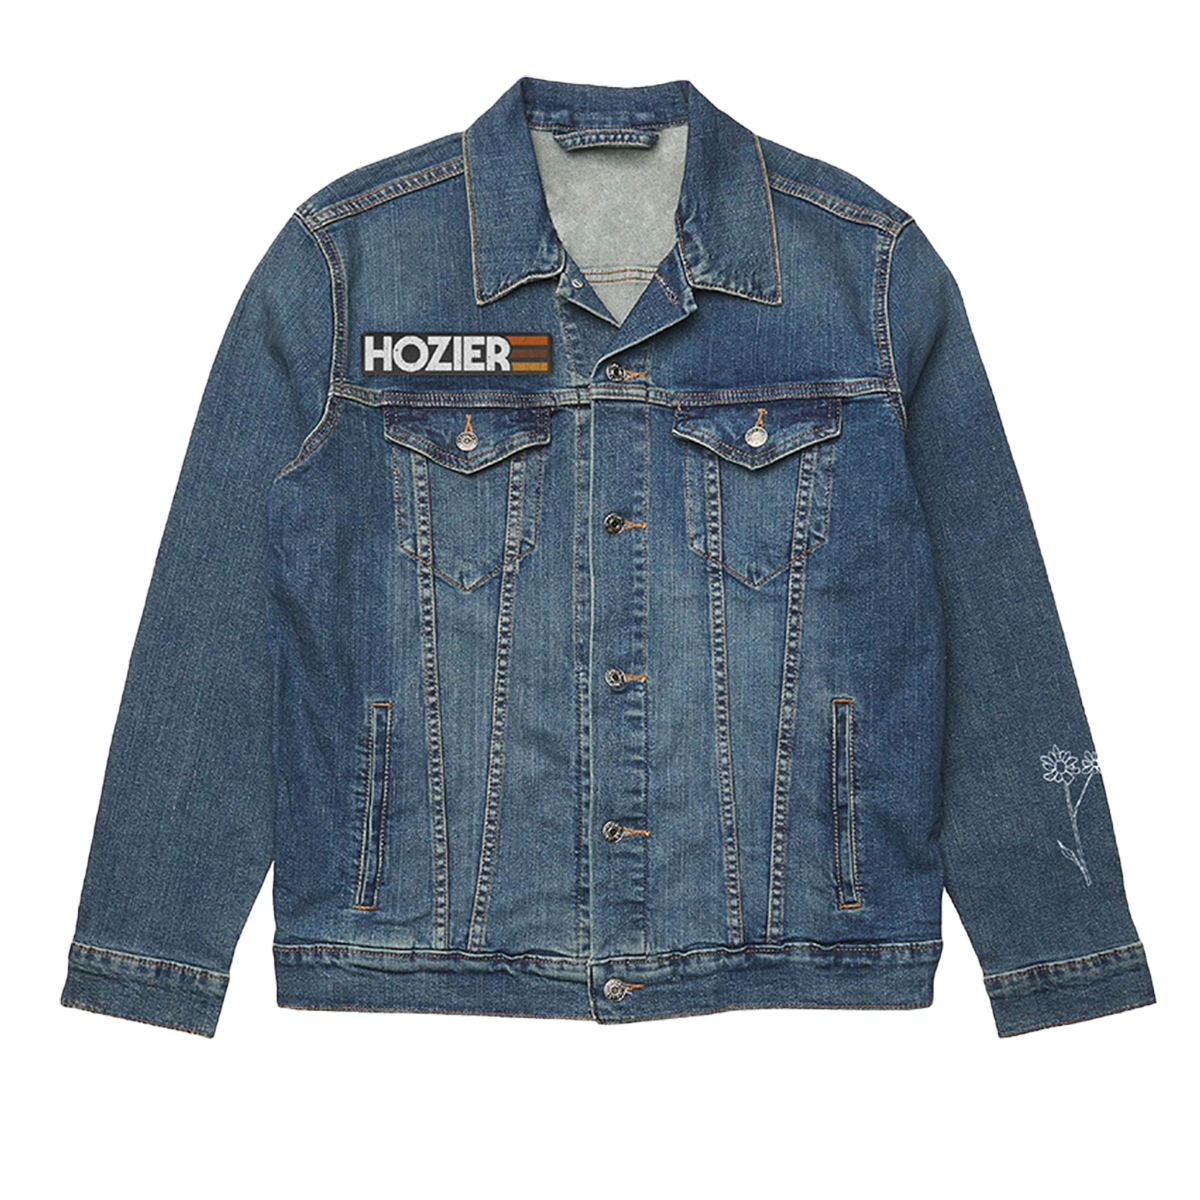 Hozier - Lost In A Haze Blue Denim Jacket